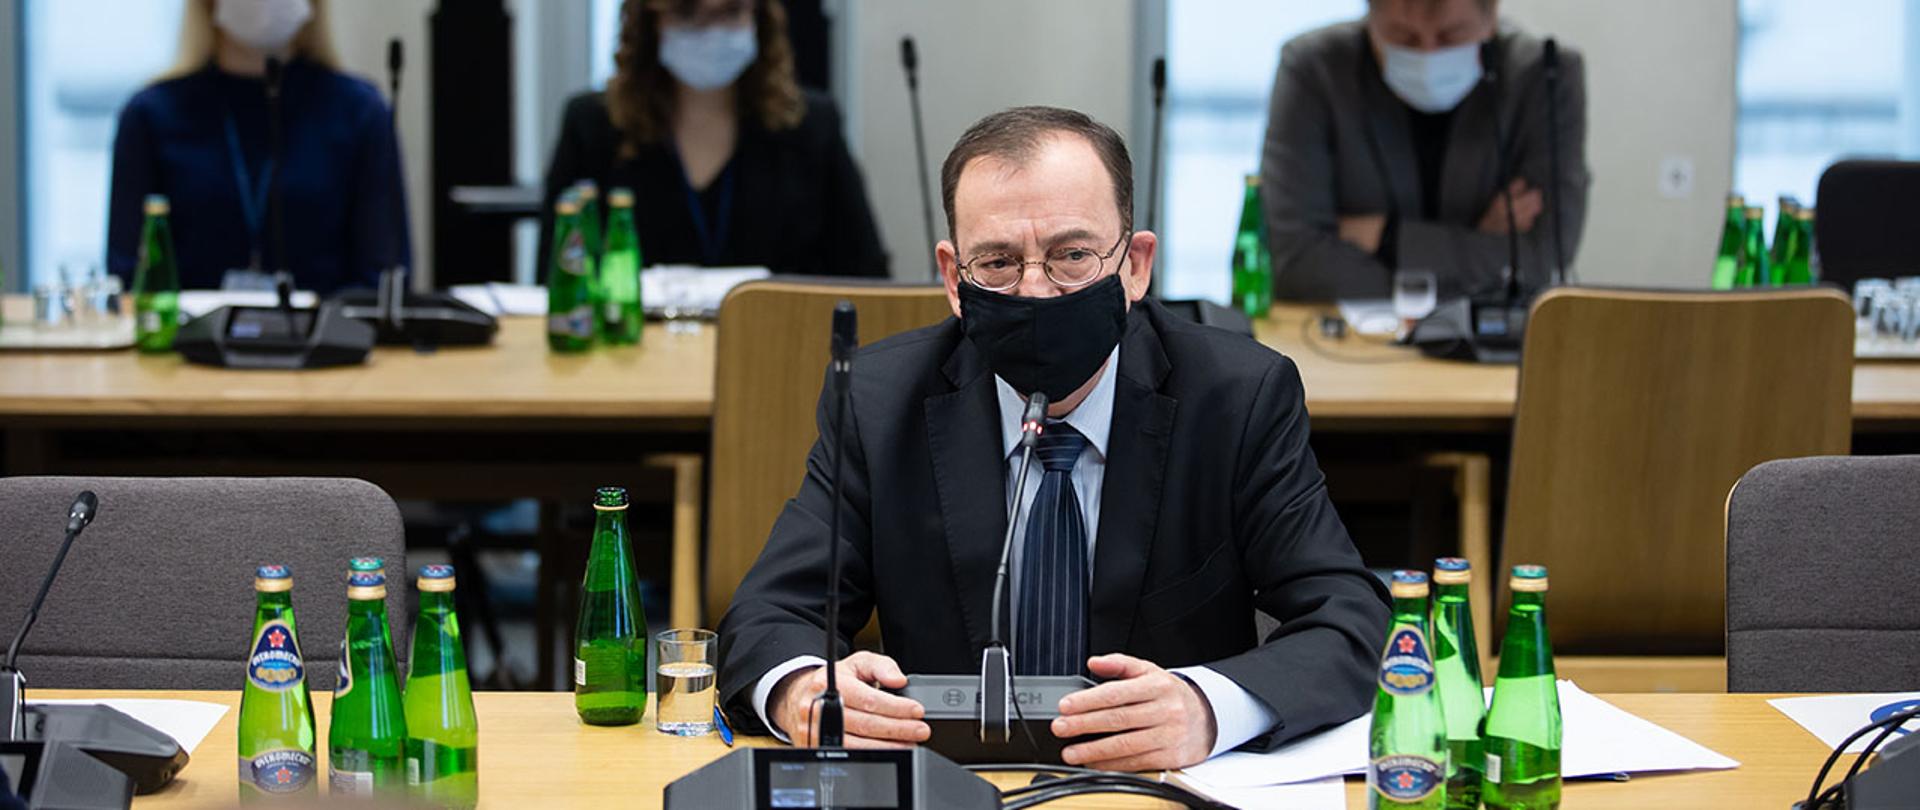 Na zdjęciu widać ministra Mariusza Kamińskiego siedzącego za stołem przemawiającego na posiedzeniu Komisji Administracji i Spraw Wewnętrznych w Sejmie.